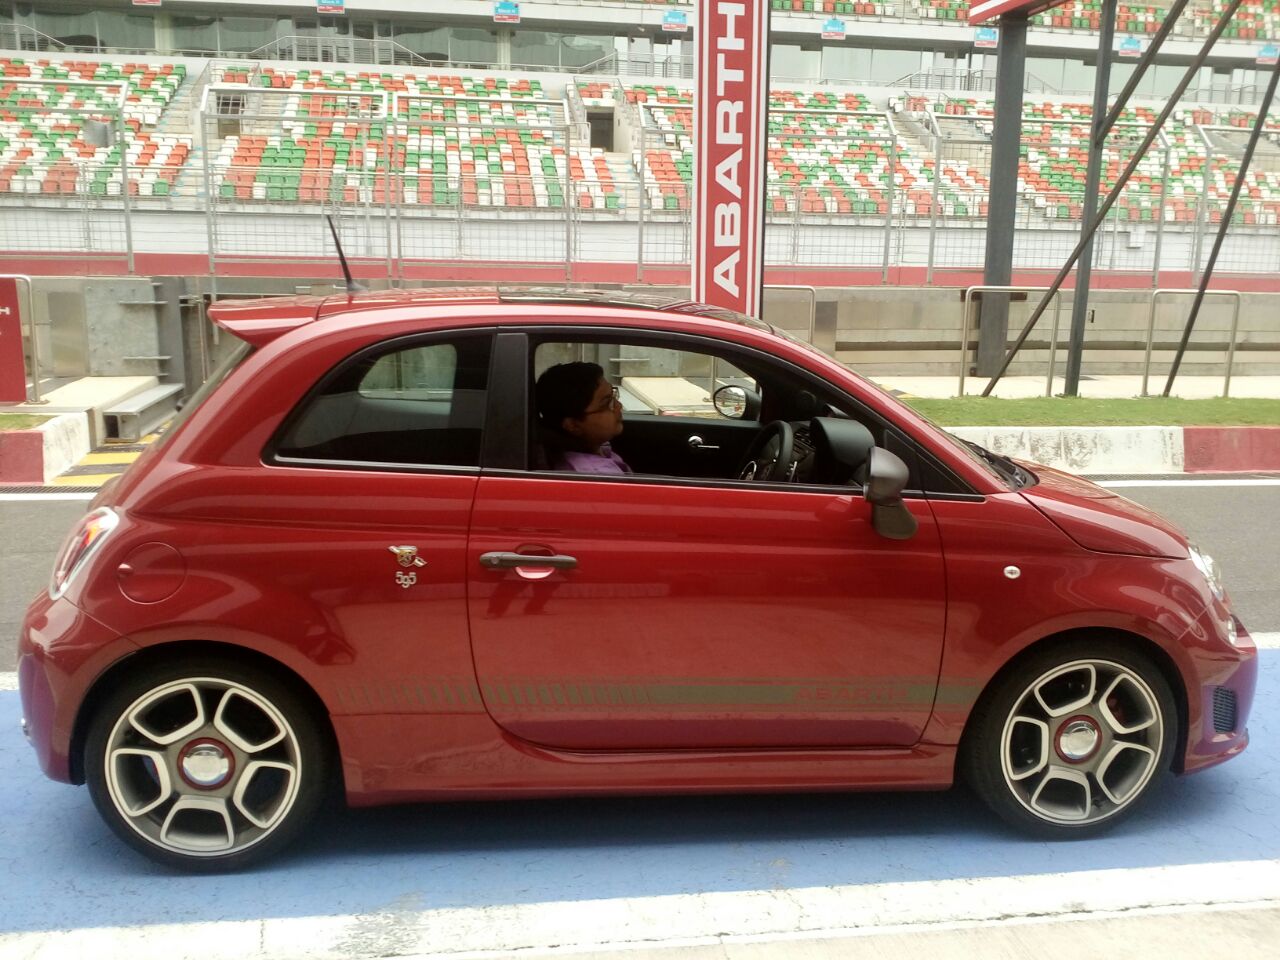 Fiat Abarth 595 Competizione Indian debut tomorrow